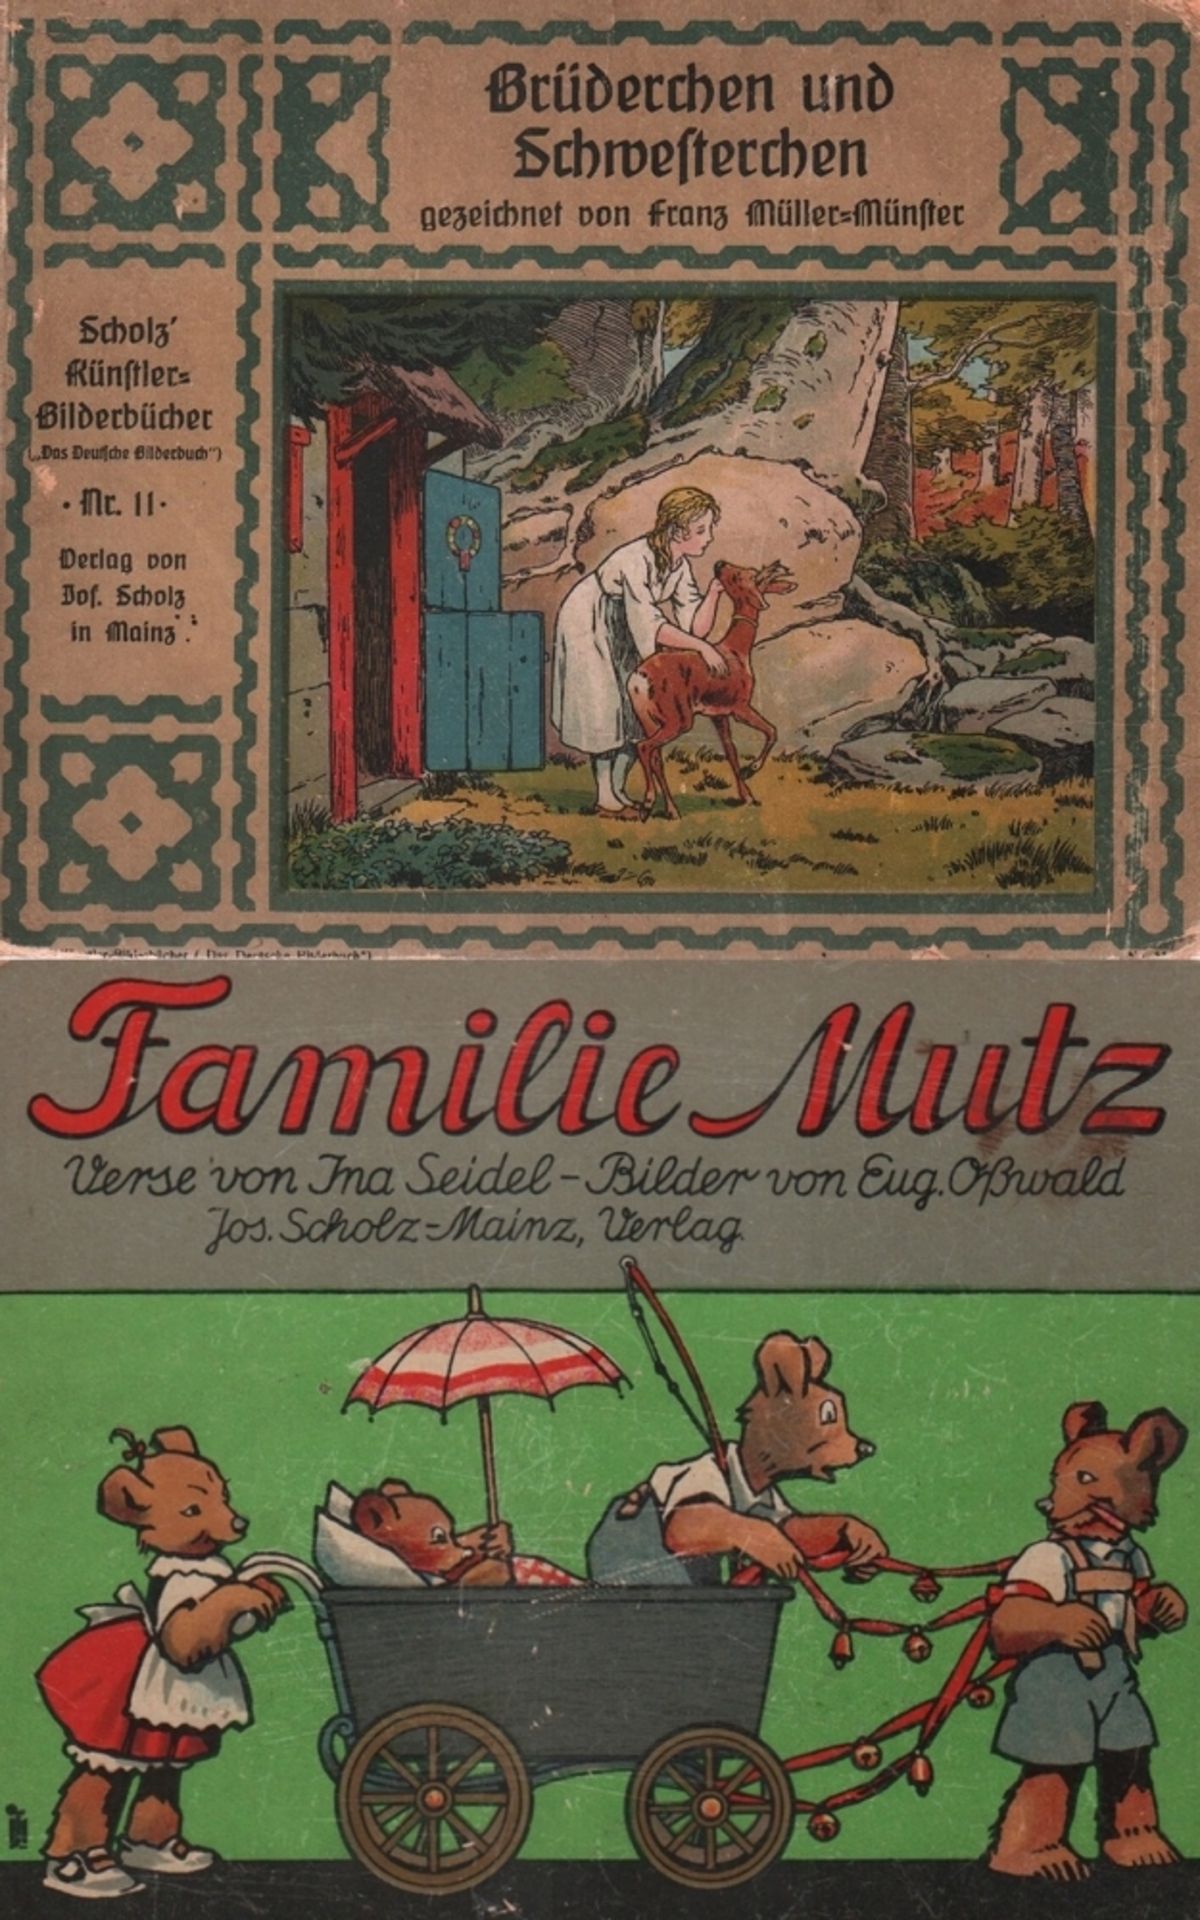 Kinderbuch. Grimm. Brüderchen und Schwesterchen. Mainz, Scholz, um 1920. Quer 4°. Mit farbigen